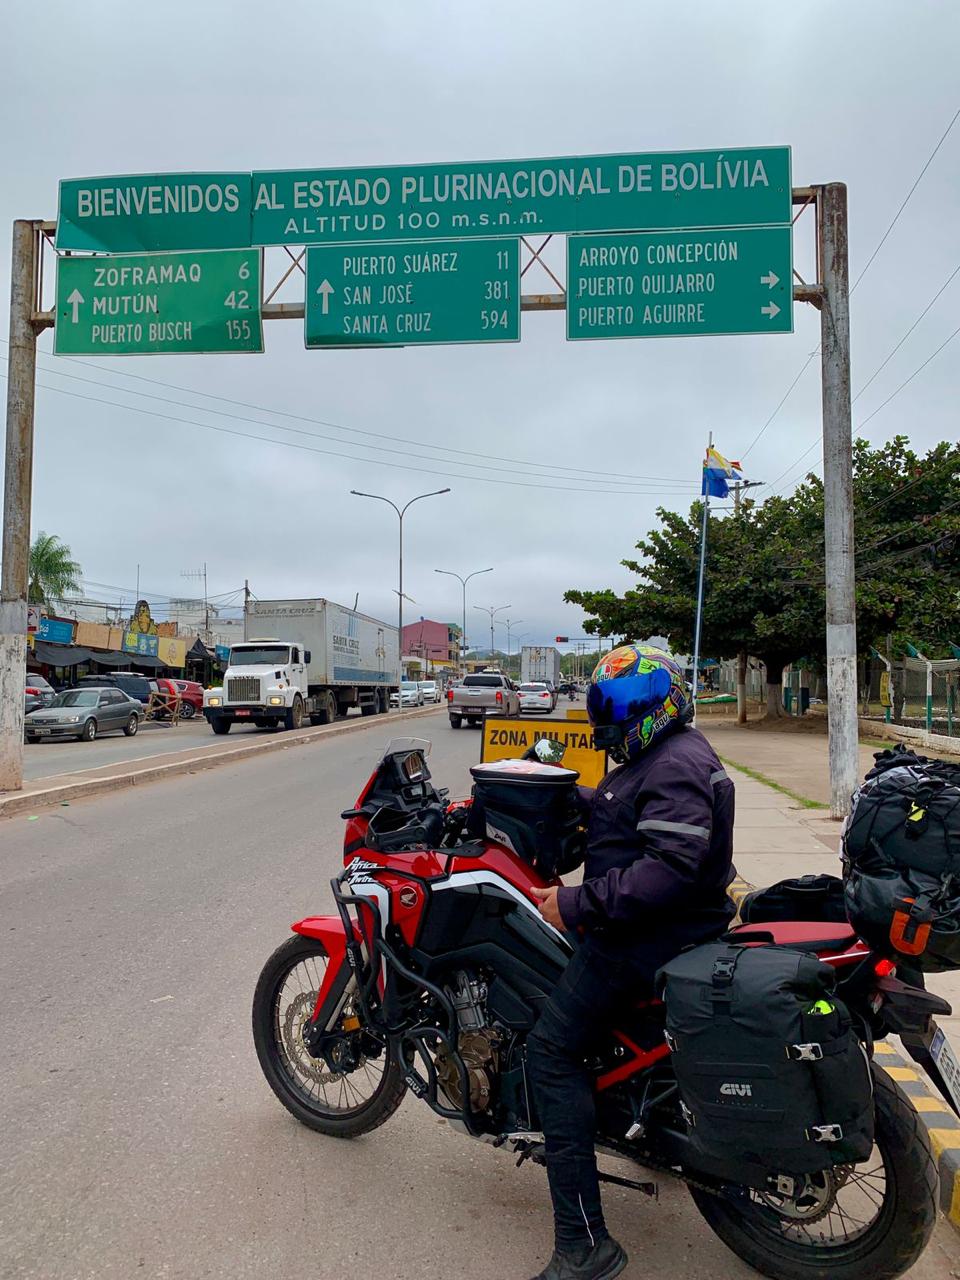 Ya más preparados, con una moto más adecuada para viajar los dos, en la llegada a Bolivia